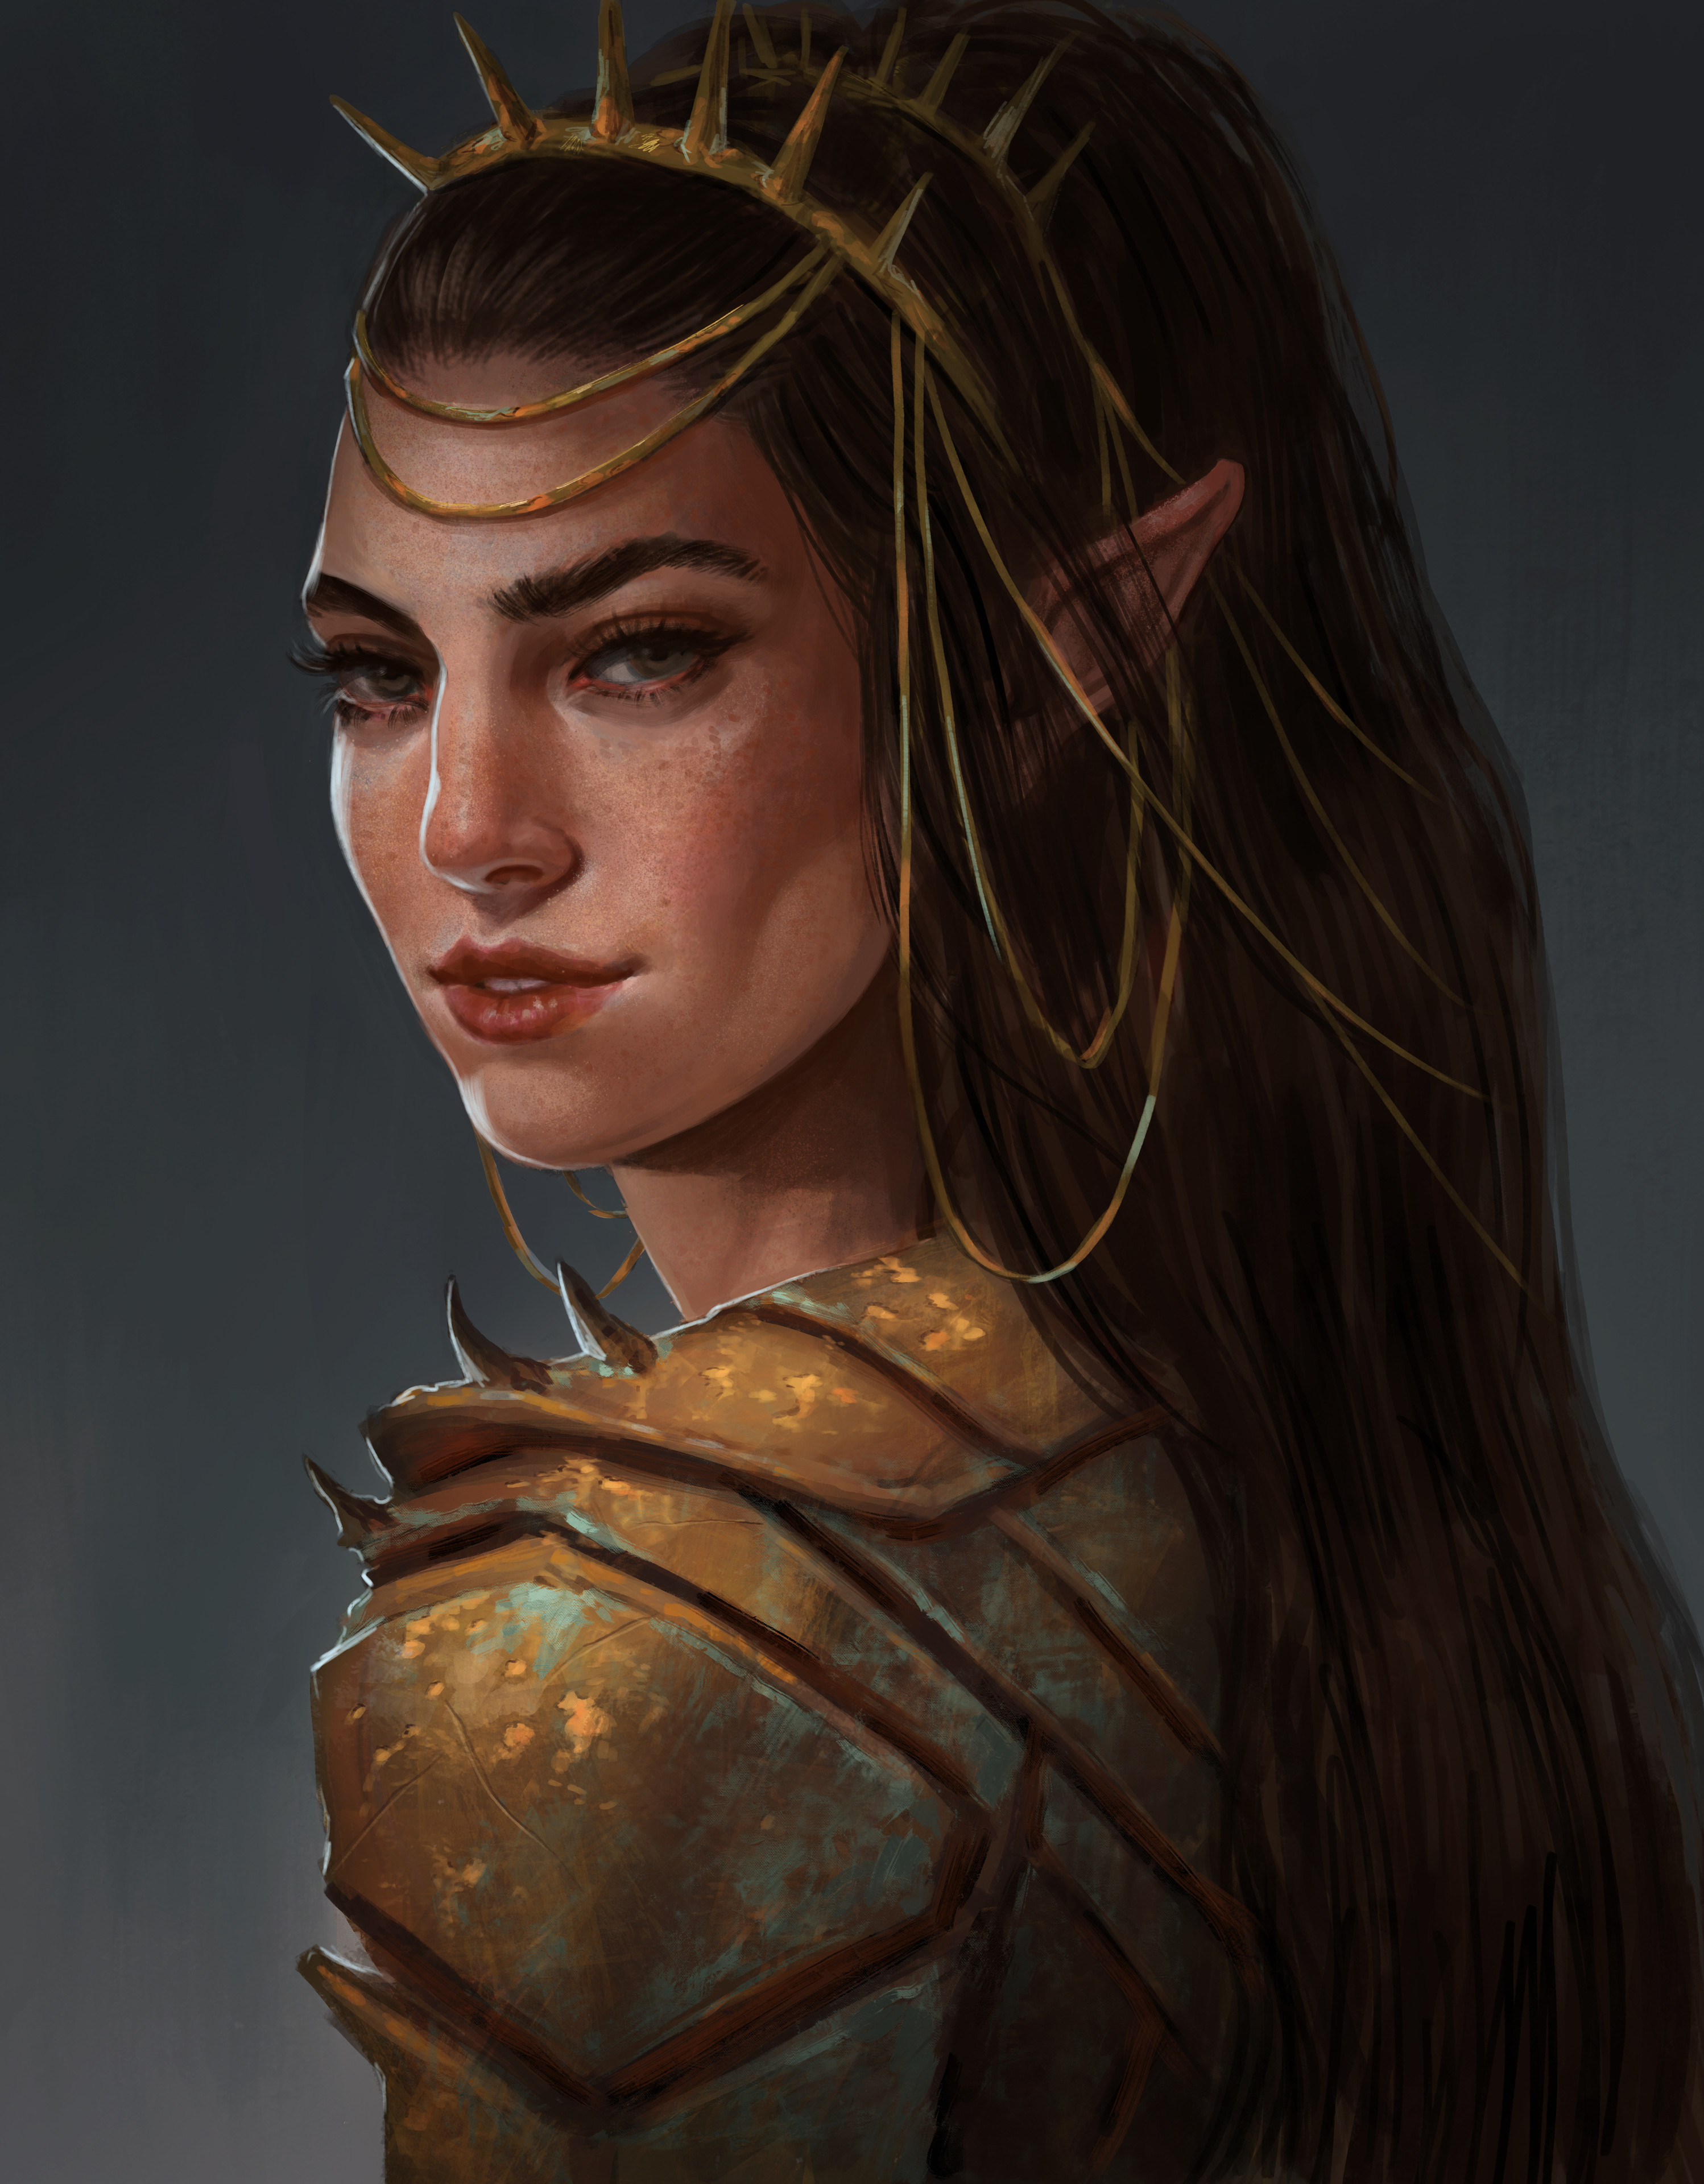 Elven girl by Sara Meseguer